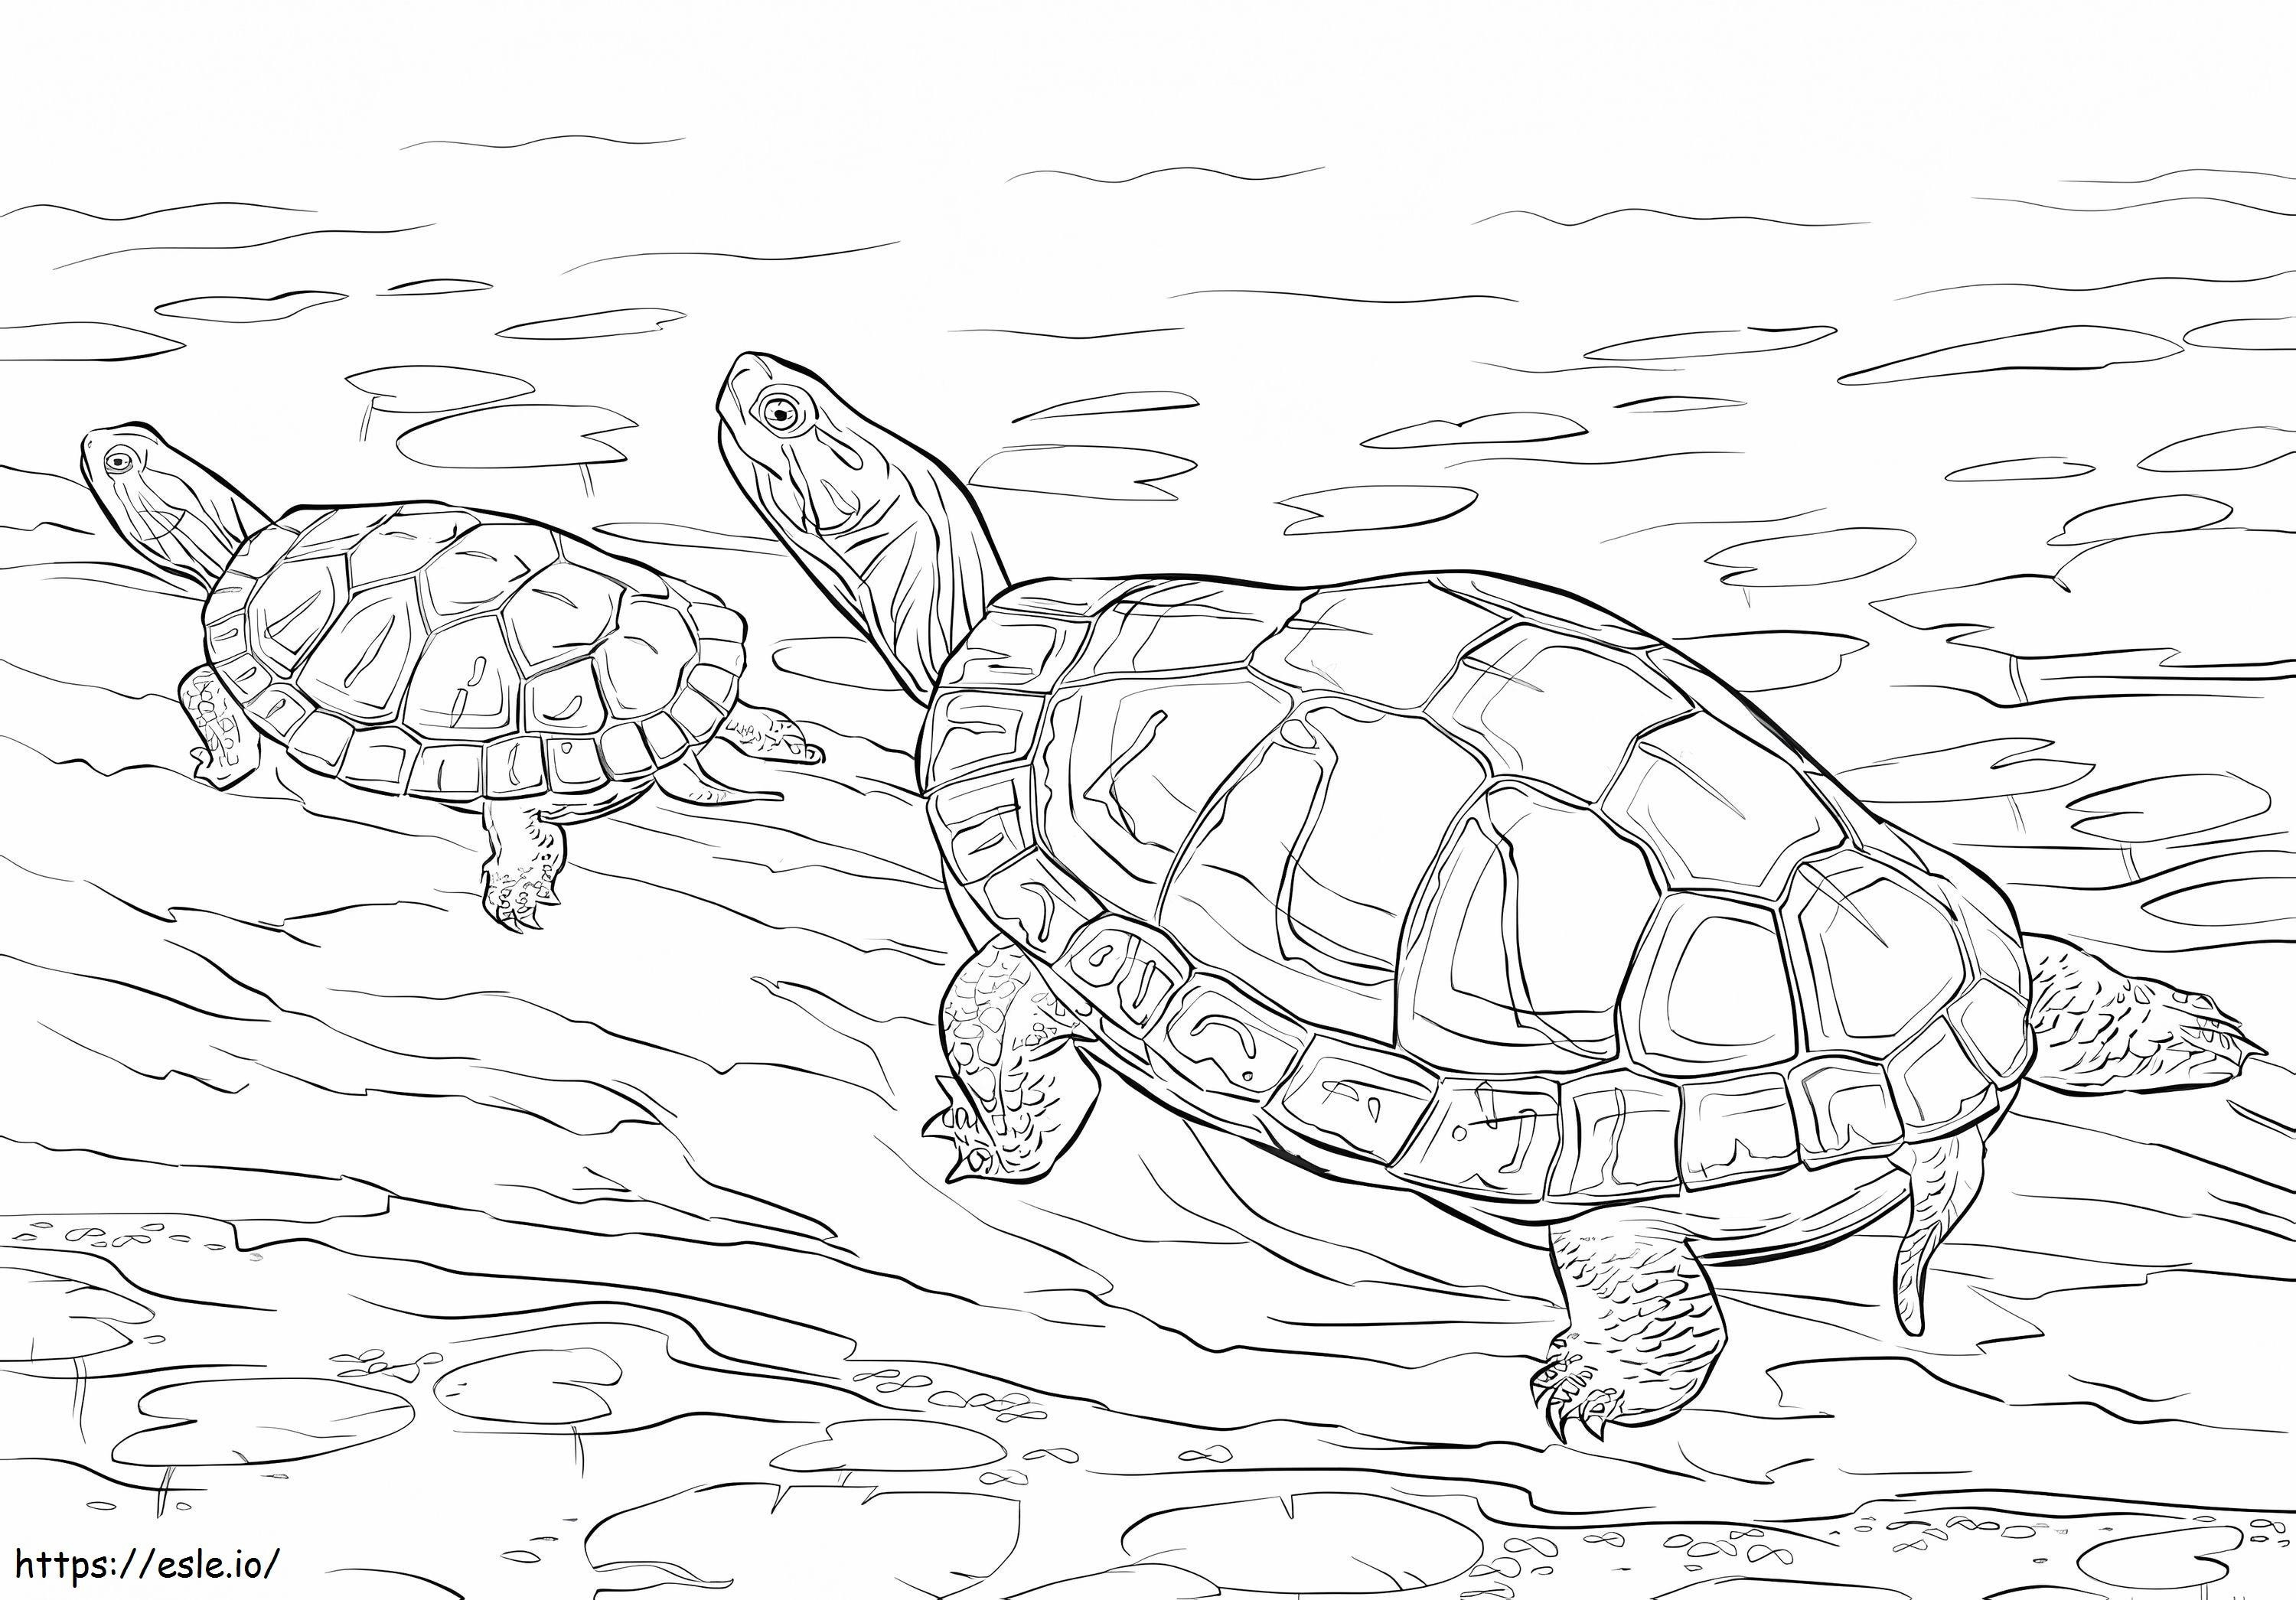 Zwei bemalte Schildkröten ausmalbilder